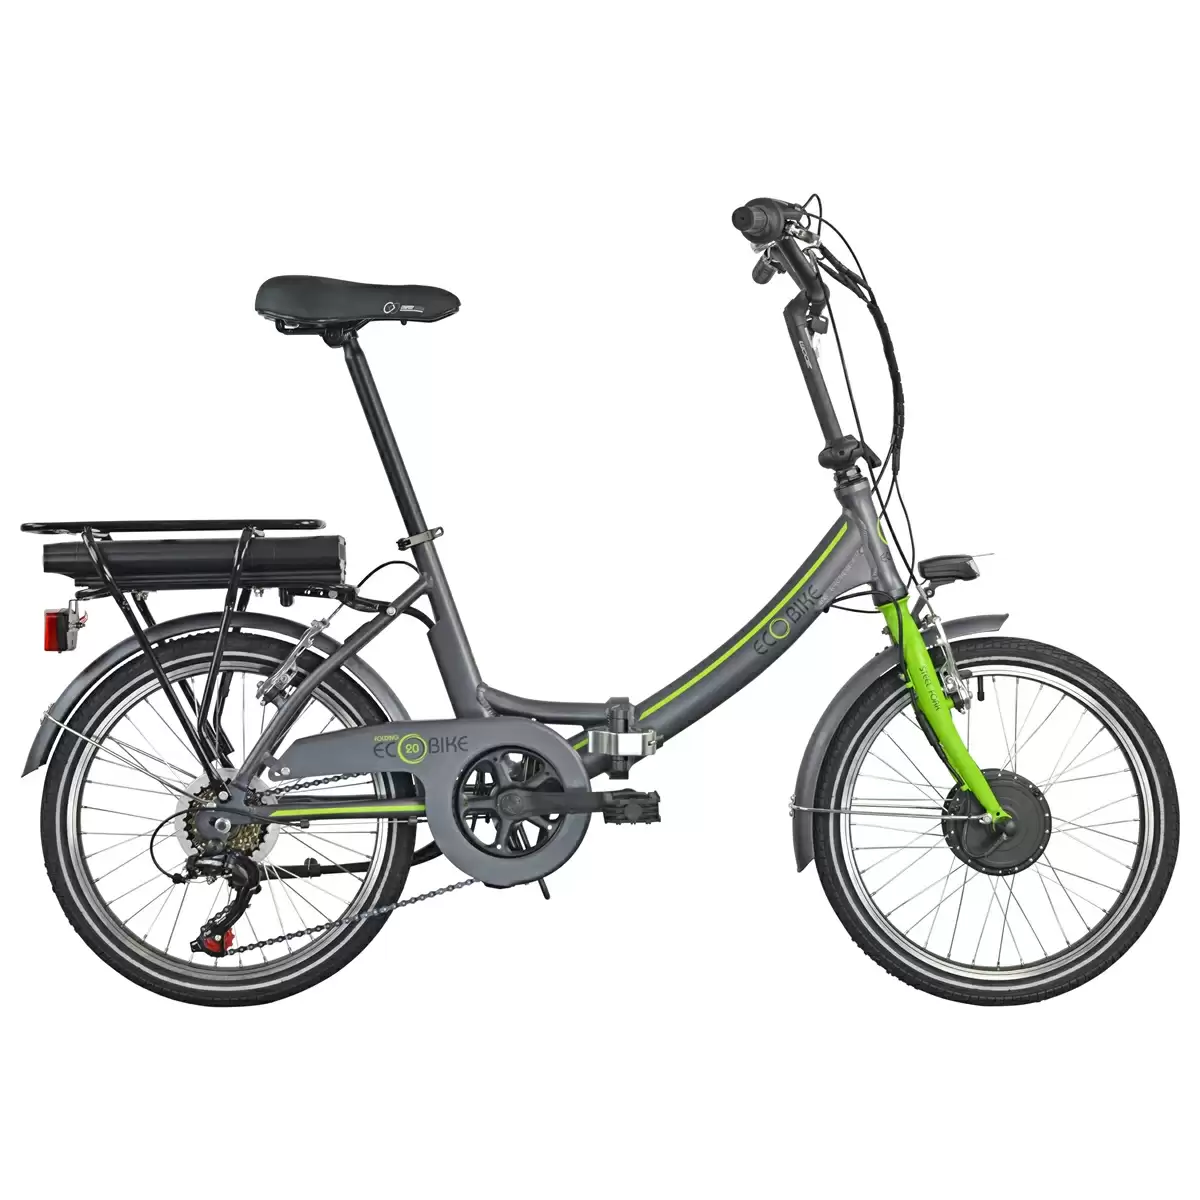 Bici Pieghevole 1281 Folding Ecobike 20'' 6v Bafang Anteriore 374Wh Grigio/Verde 2021 - image